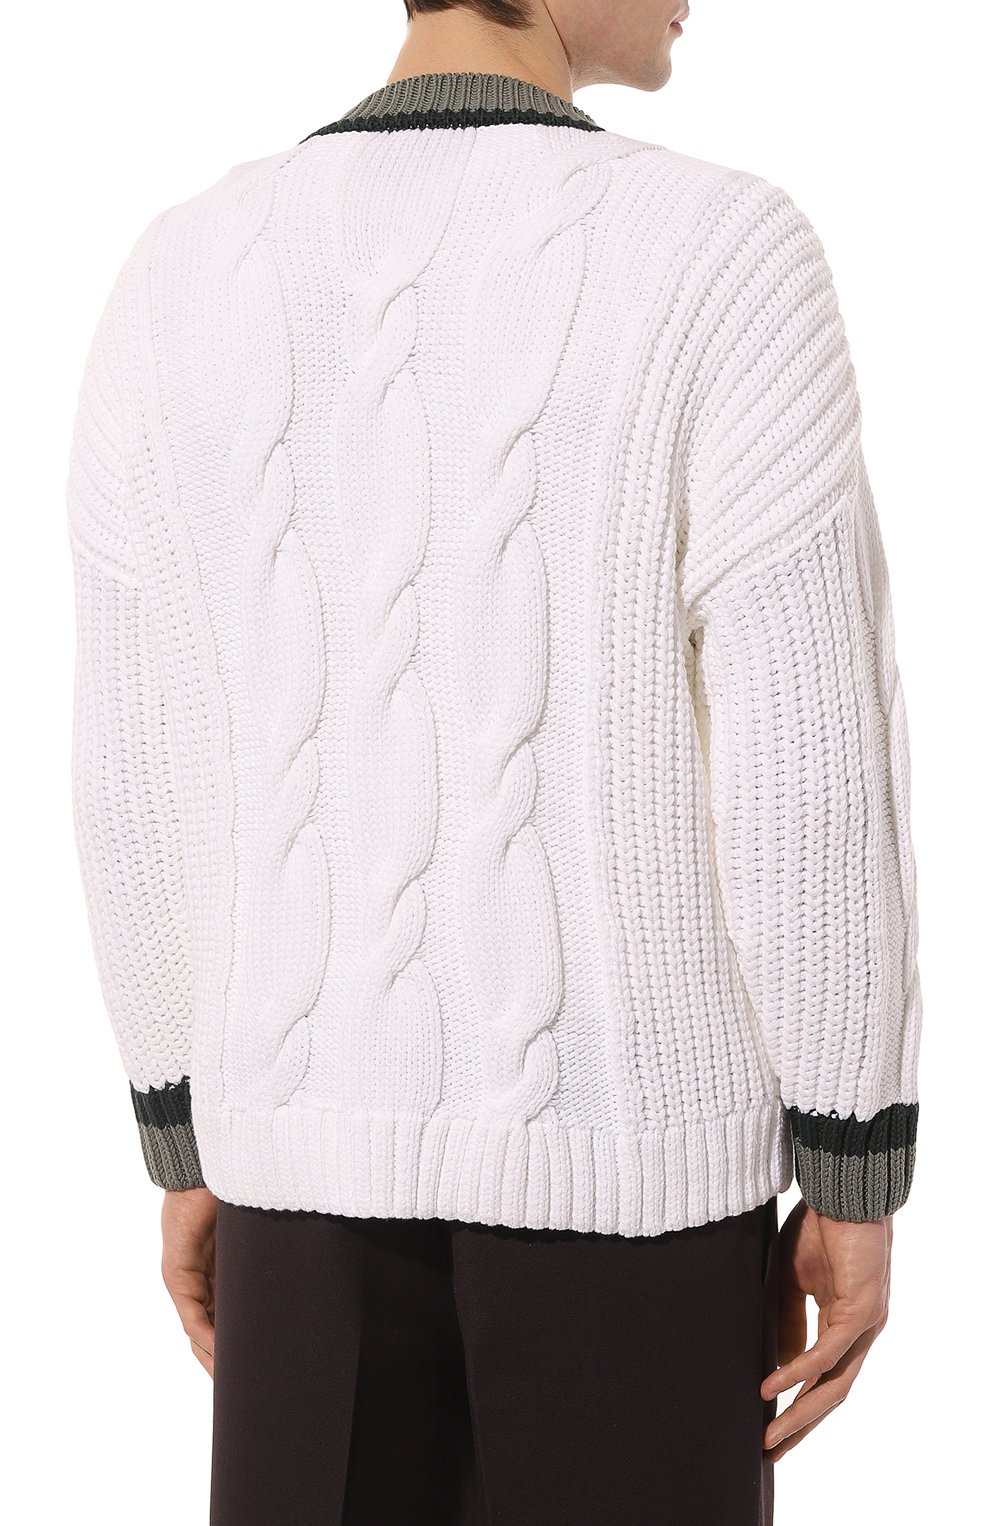 Хлопковый свитер BOSS 50486717, цвет белый, размер 48 - фото 4